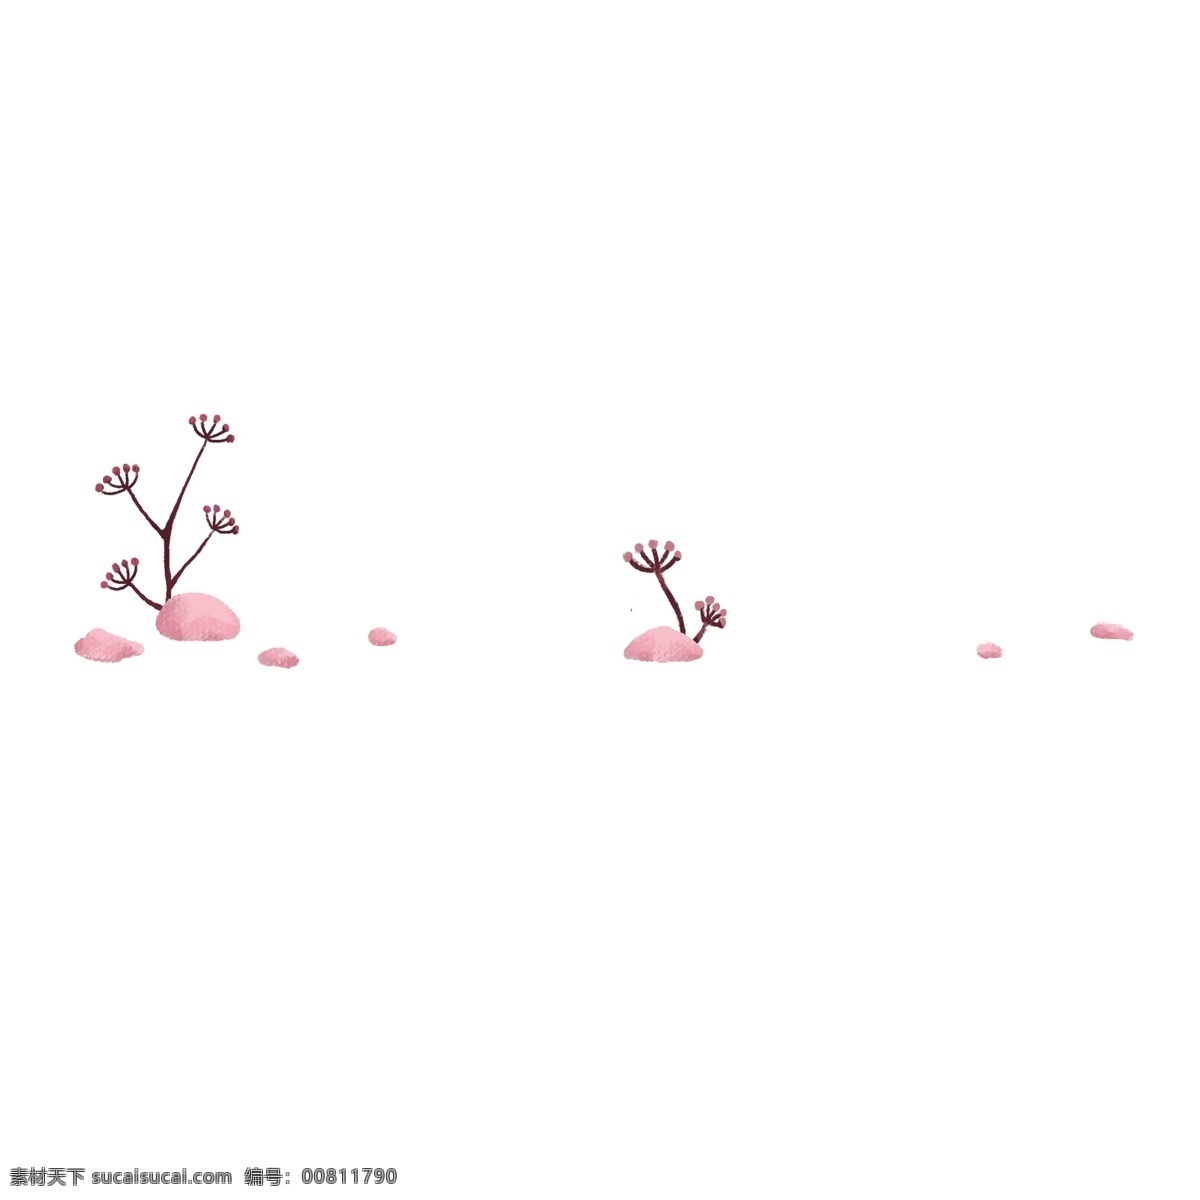 手绘 植物 分割线 插画 植物分割线 粉色 花骨朵 花骨朵分割线 分割线插画